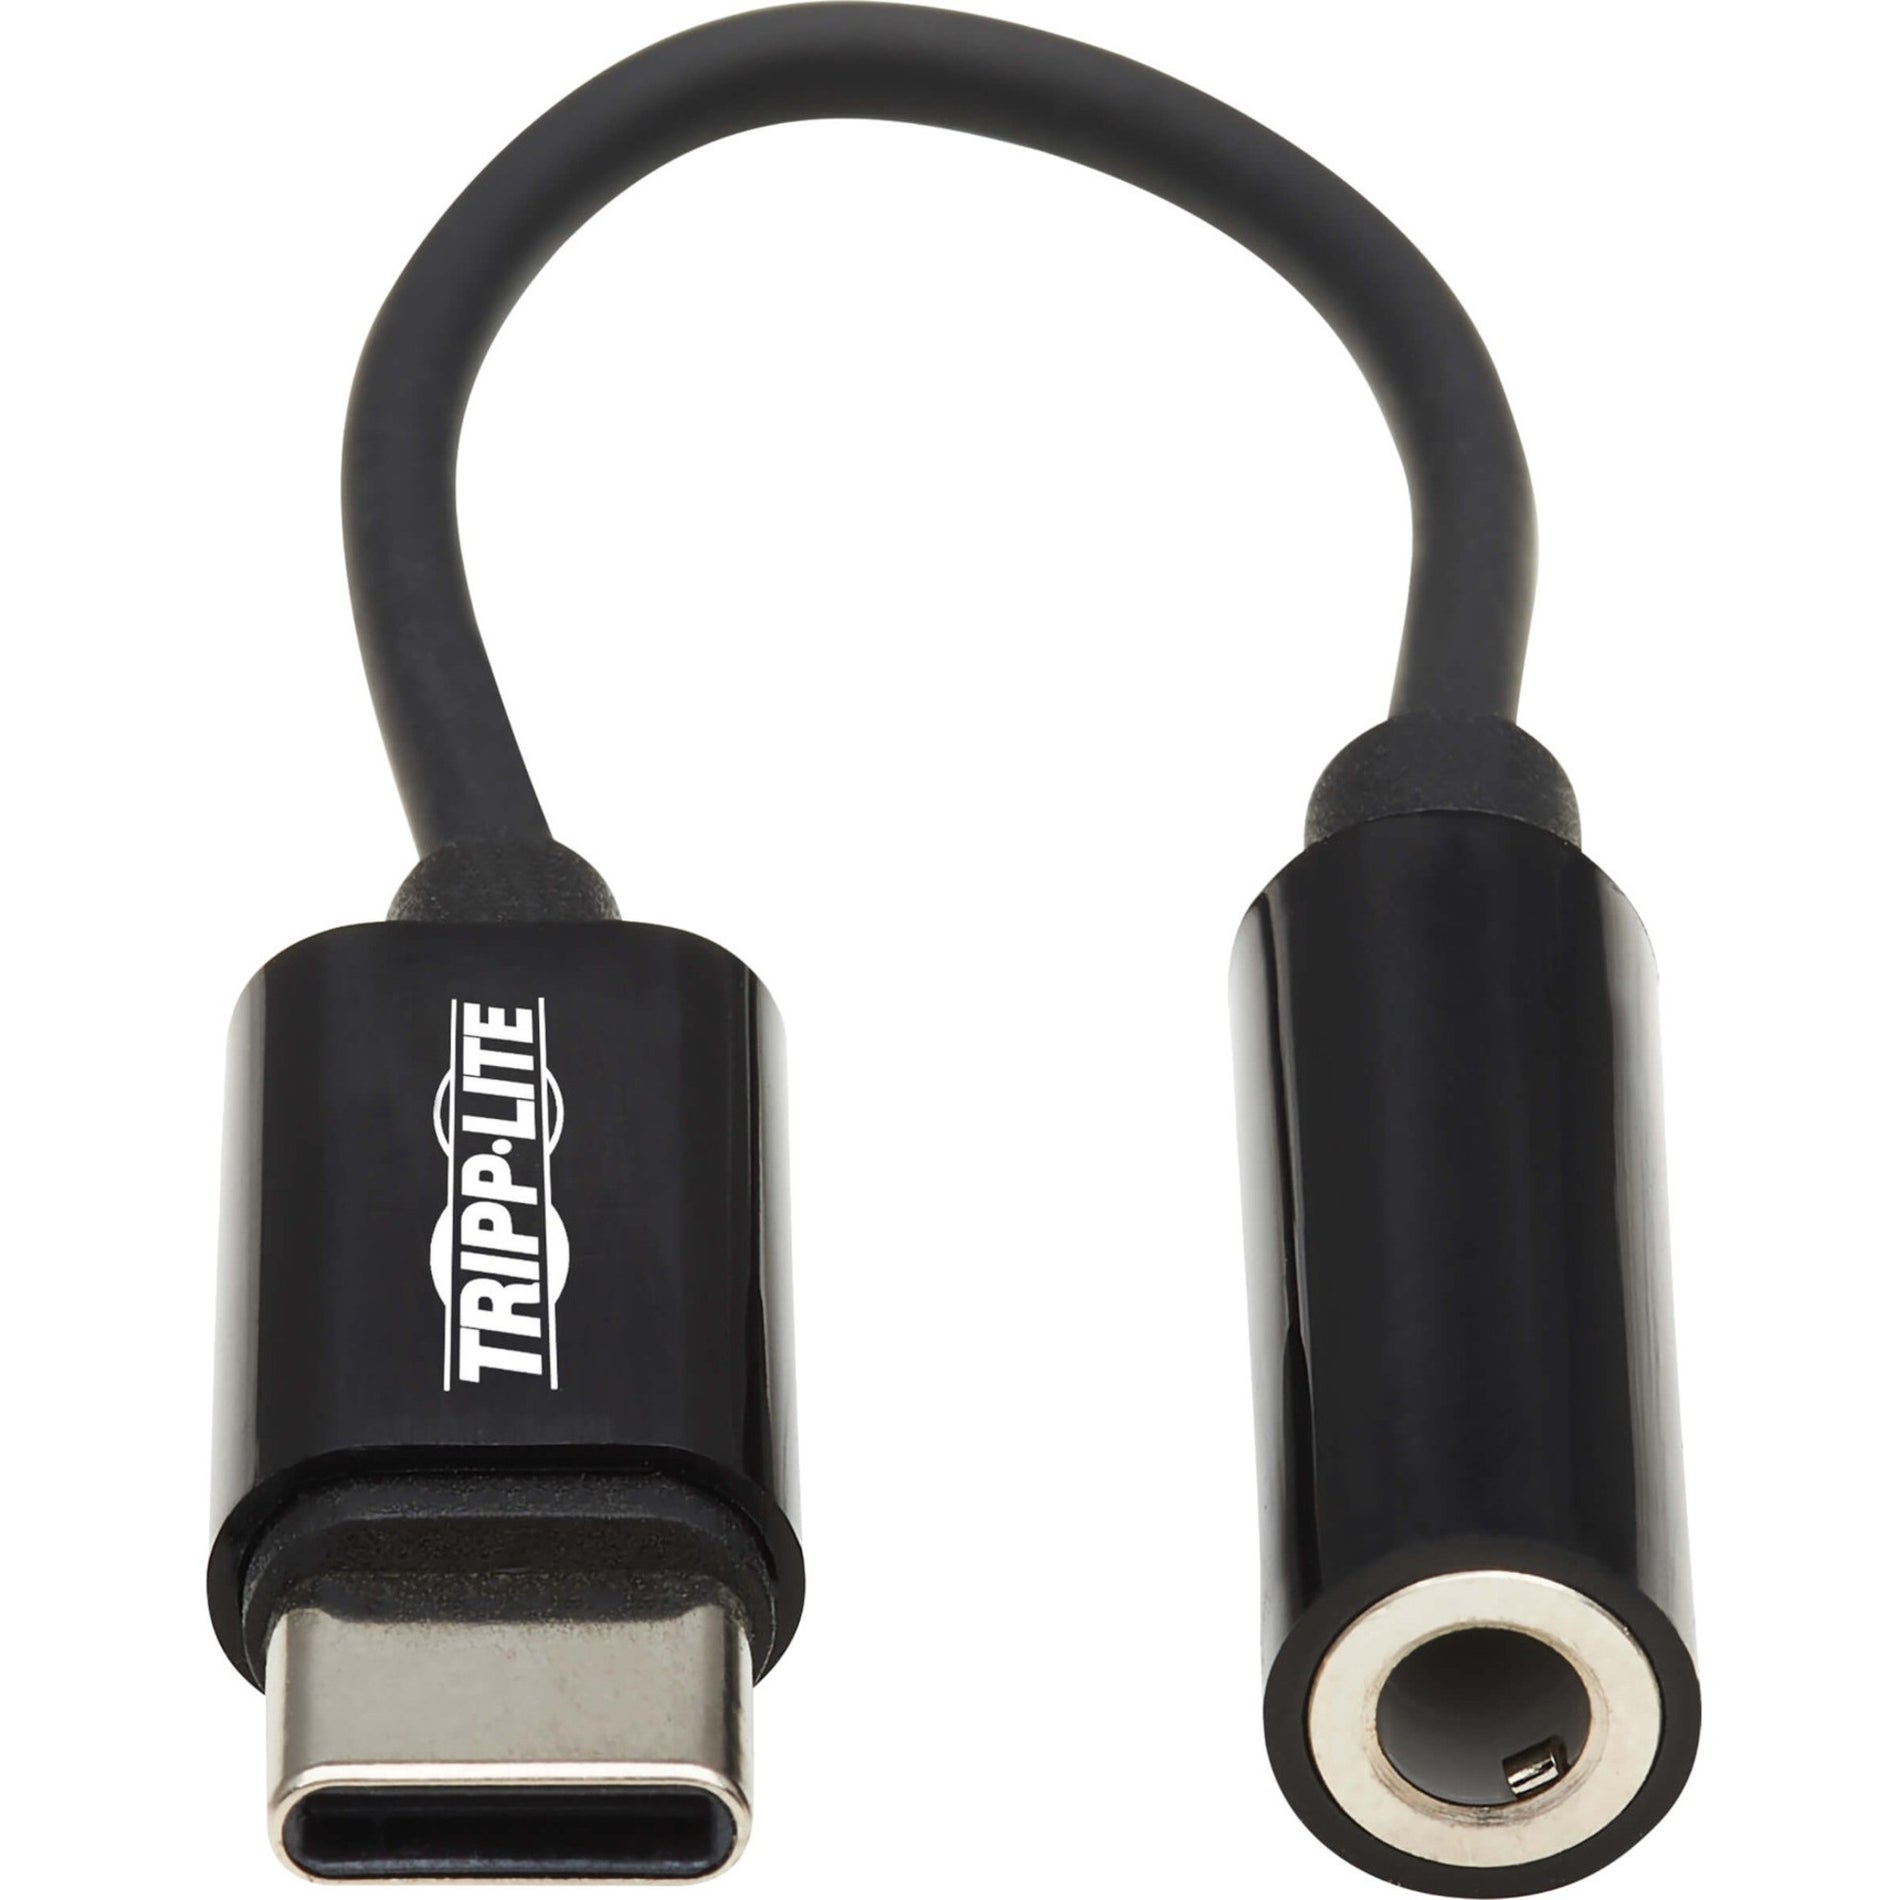 Adaptateur de prise casque USB-C vers 35 mm Tripp Lite U437-001 brancher et jouer câble de 792" noir